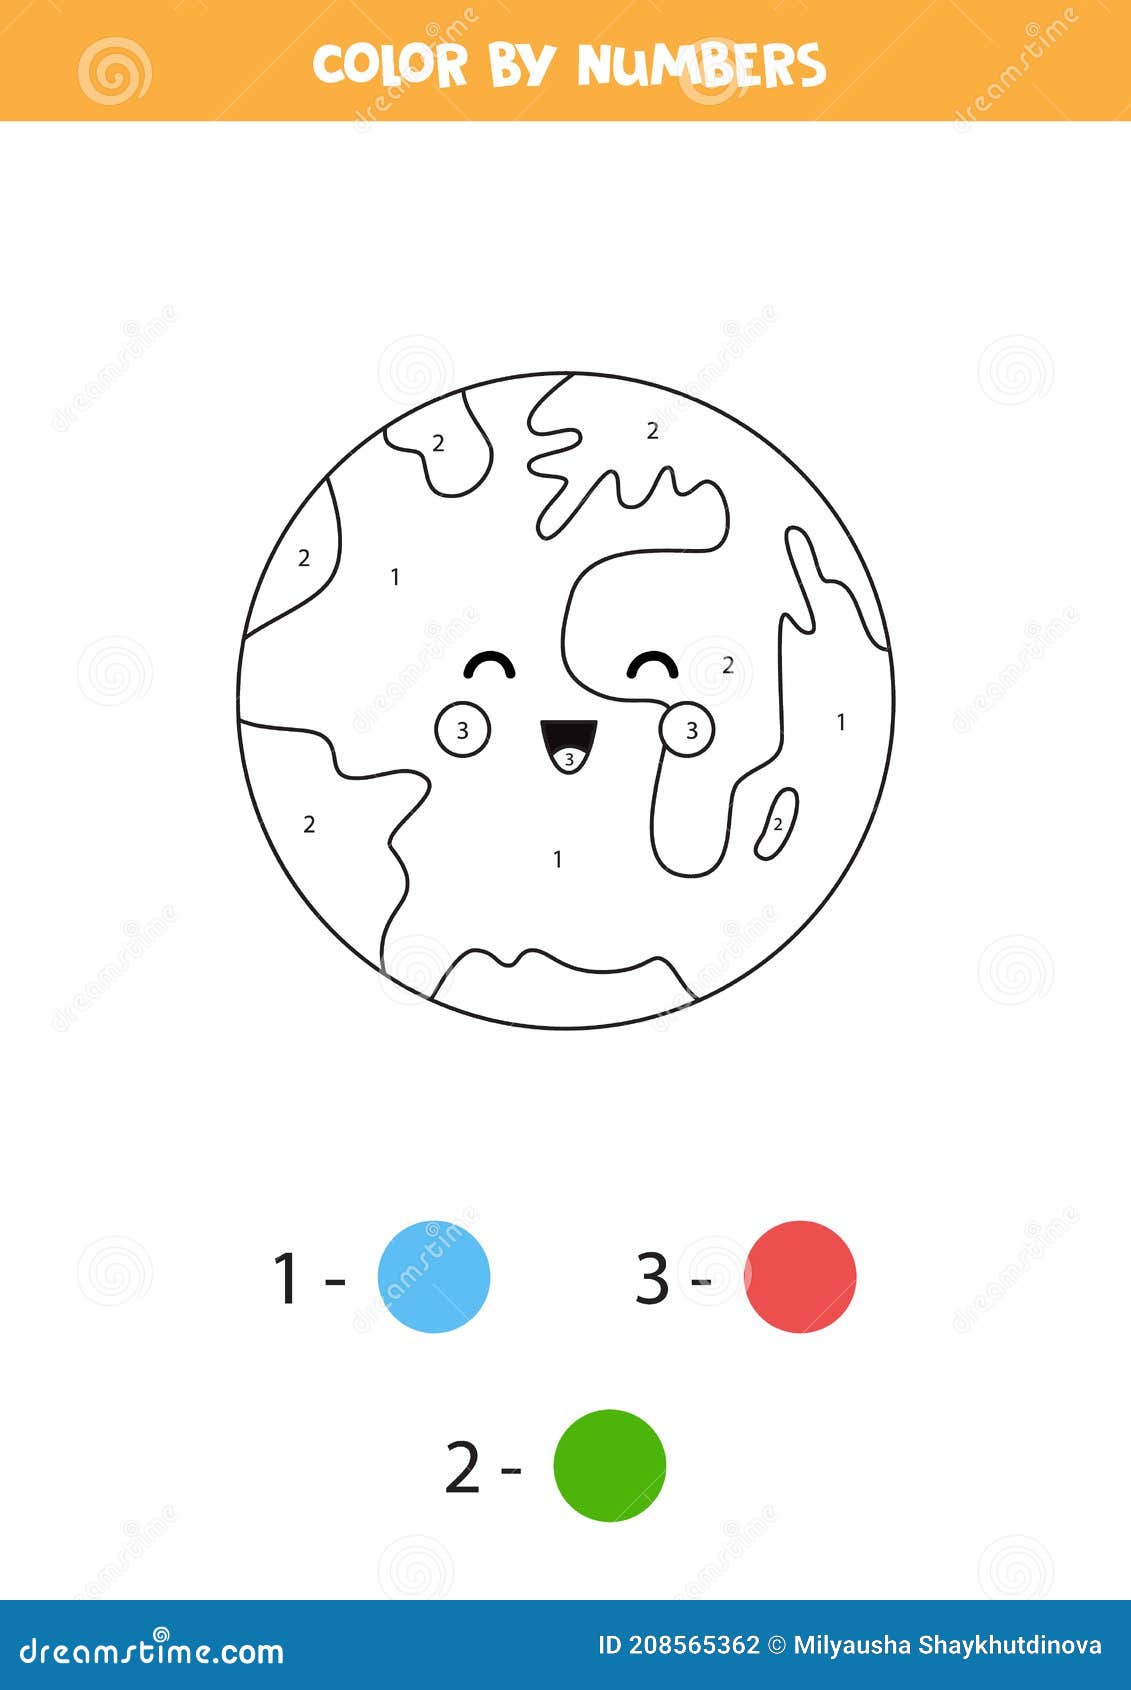 Números de cores de acordo com o exemplo. jogo de matemática para